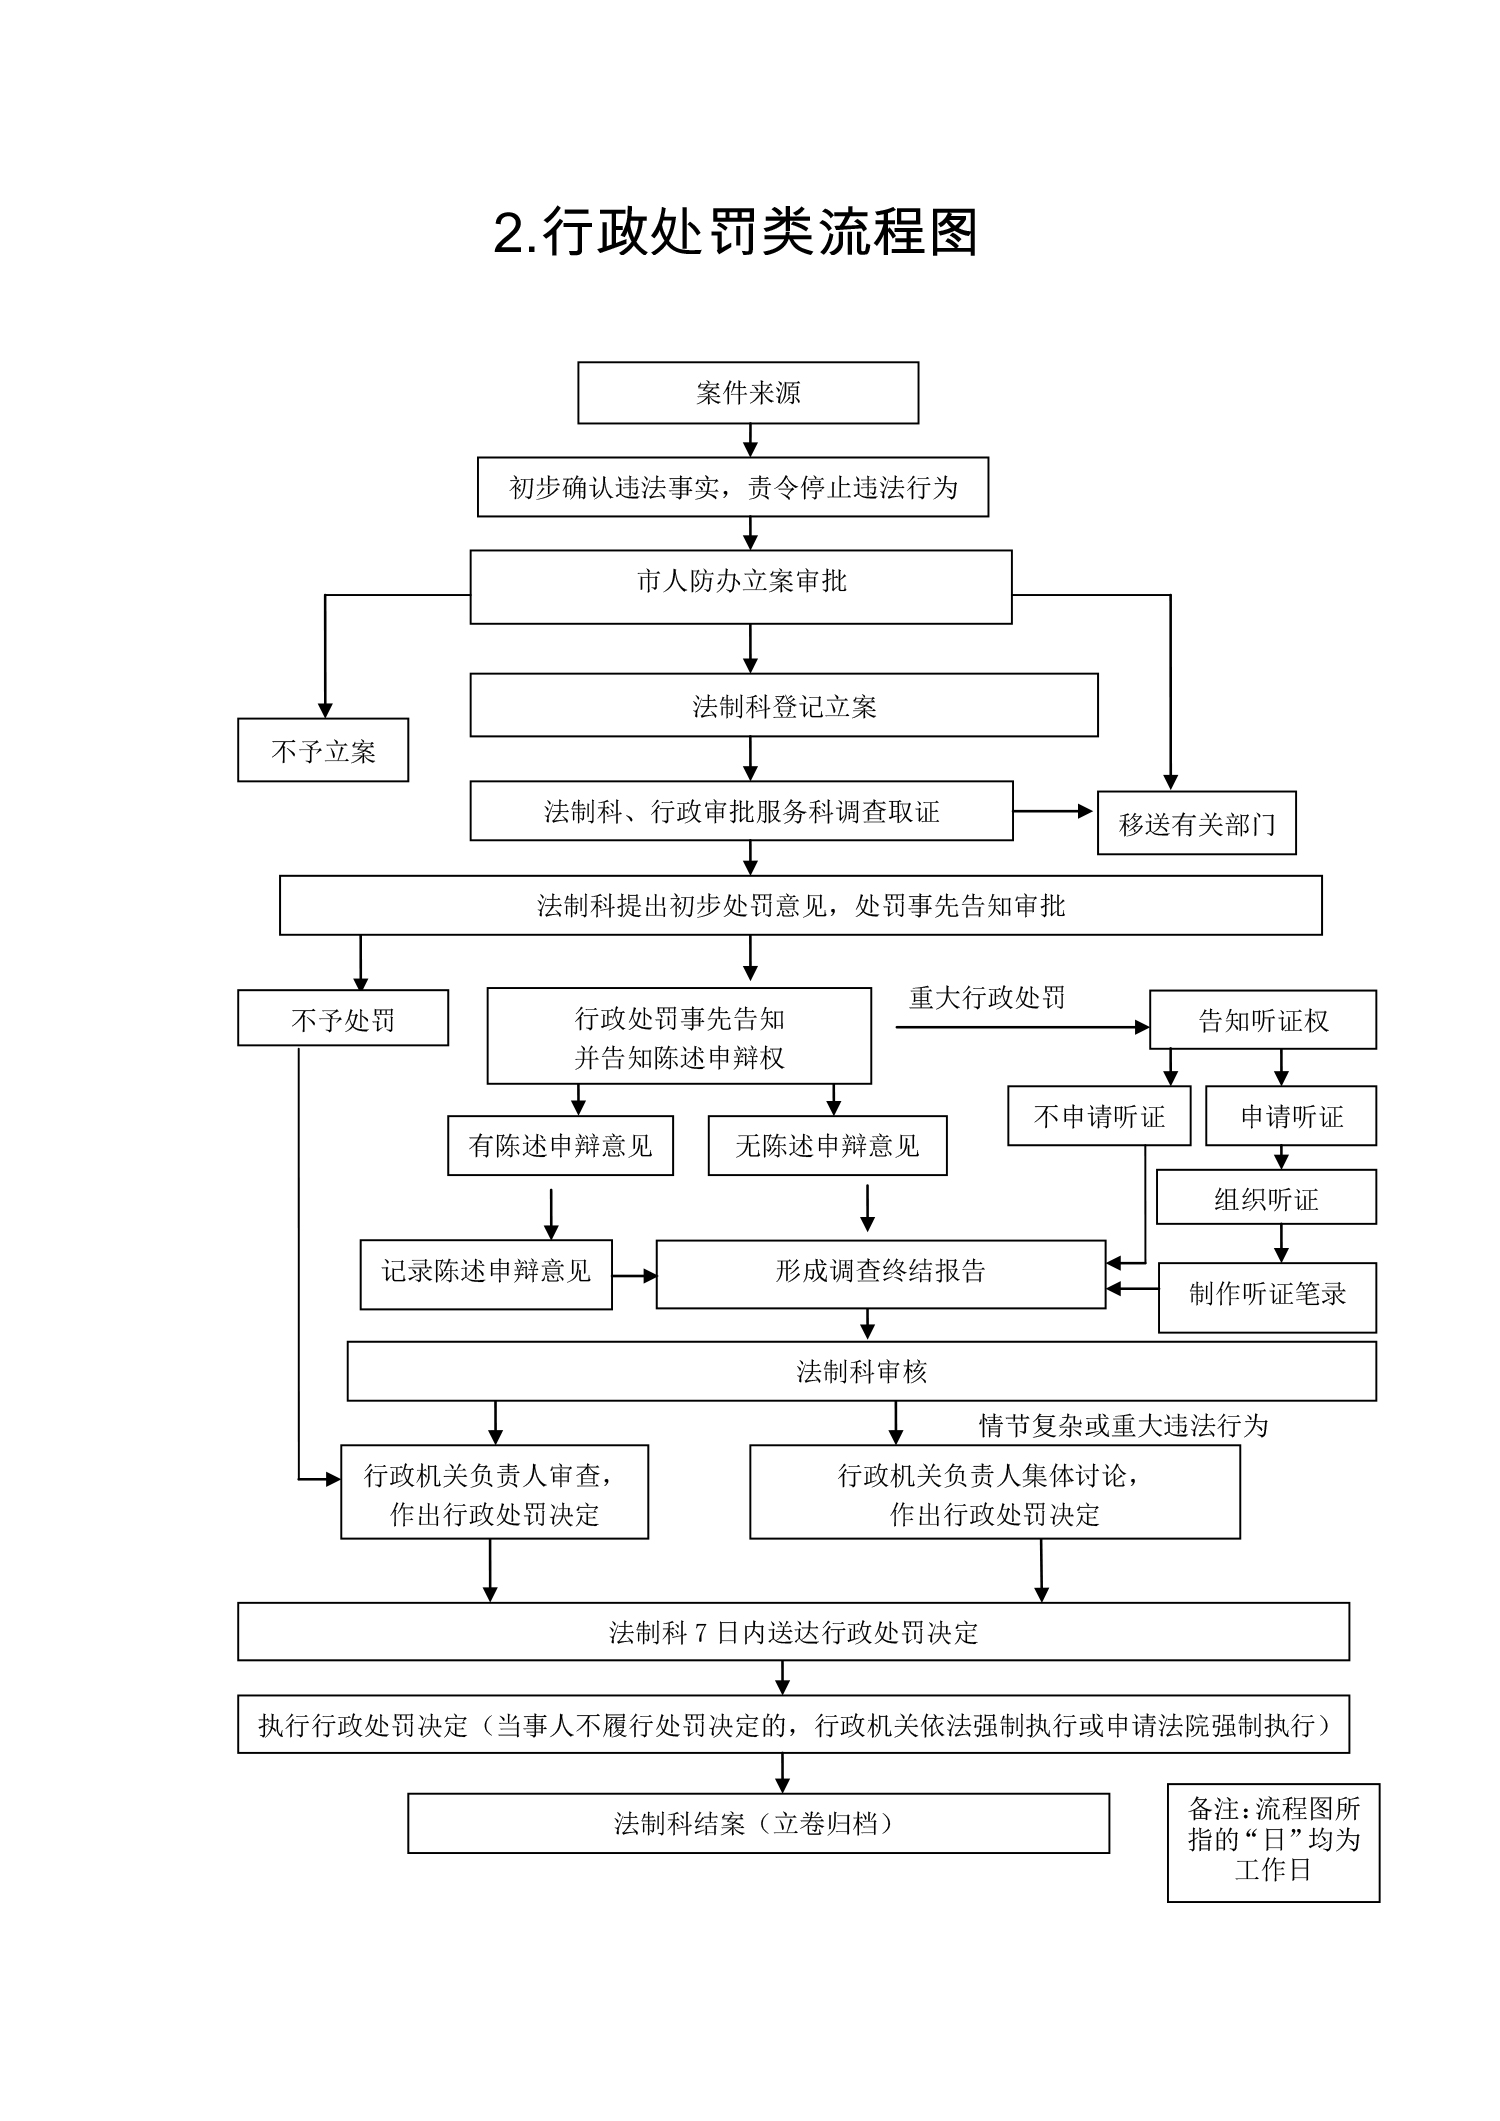 开封市人民防空办公室行政职权运行流程图-2.jpg